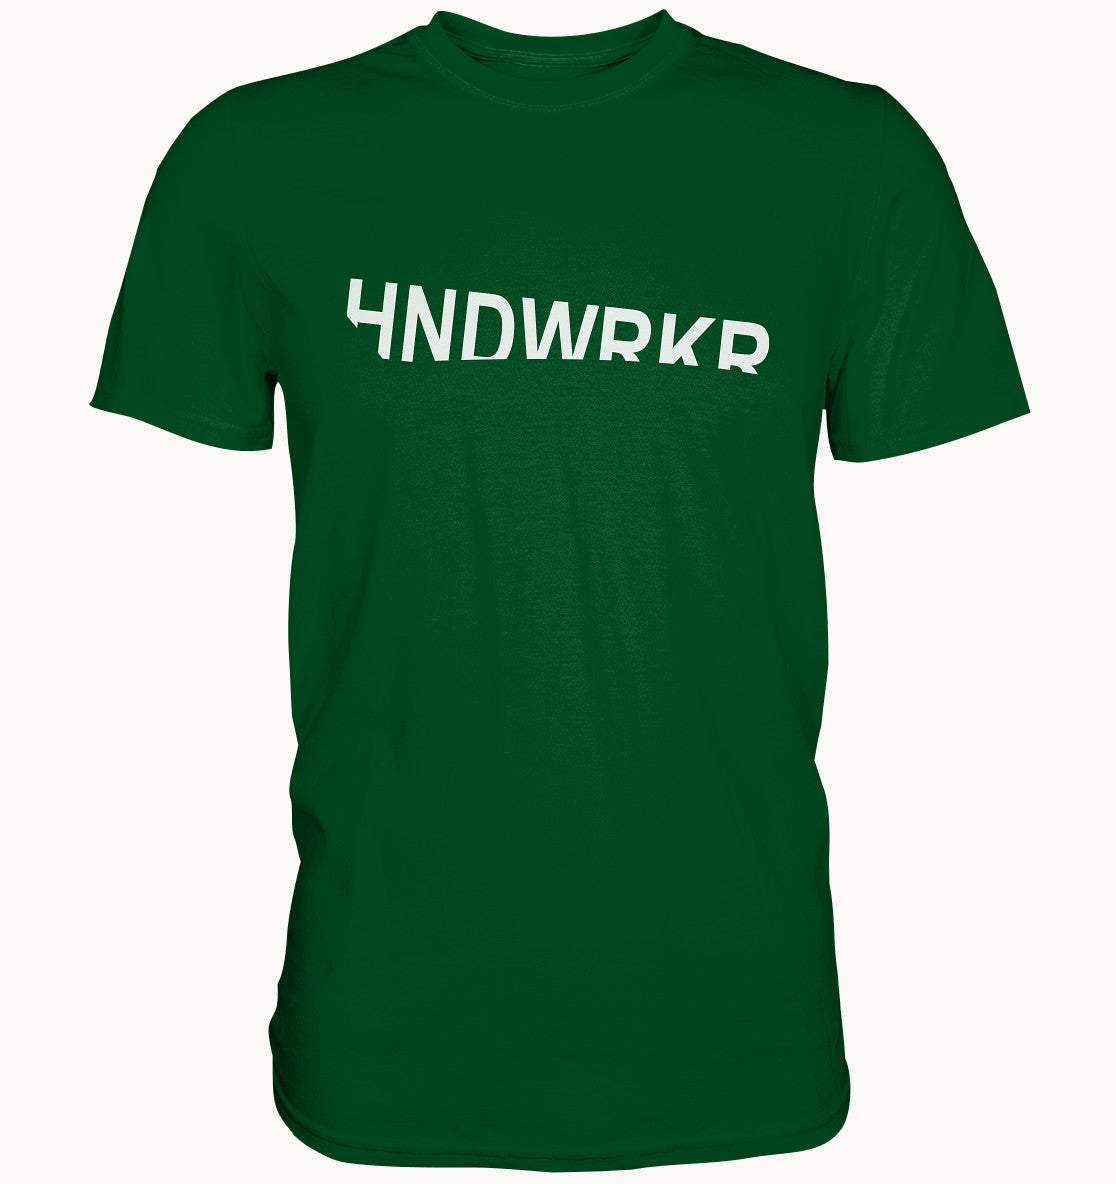 HNDWRKR - Handwerker Designer Shirt - Baufun Shop